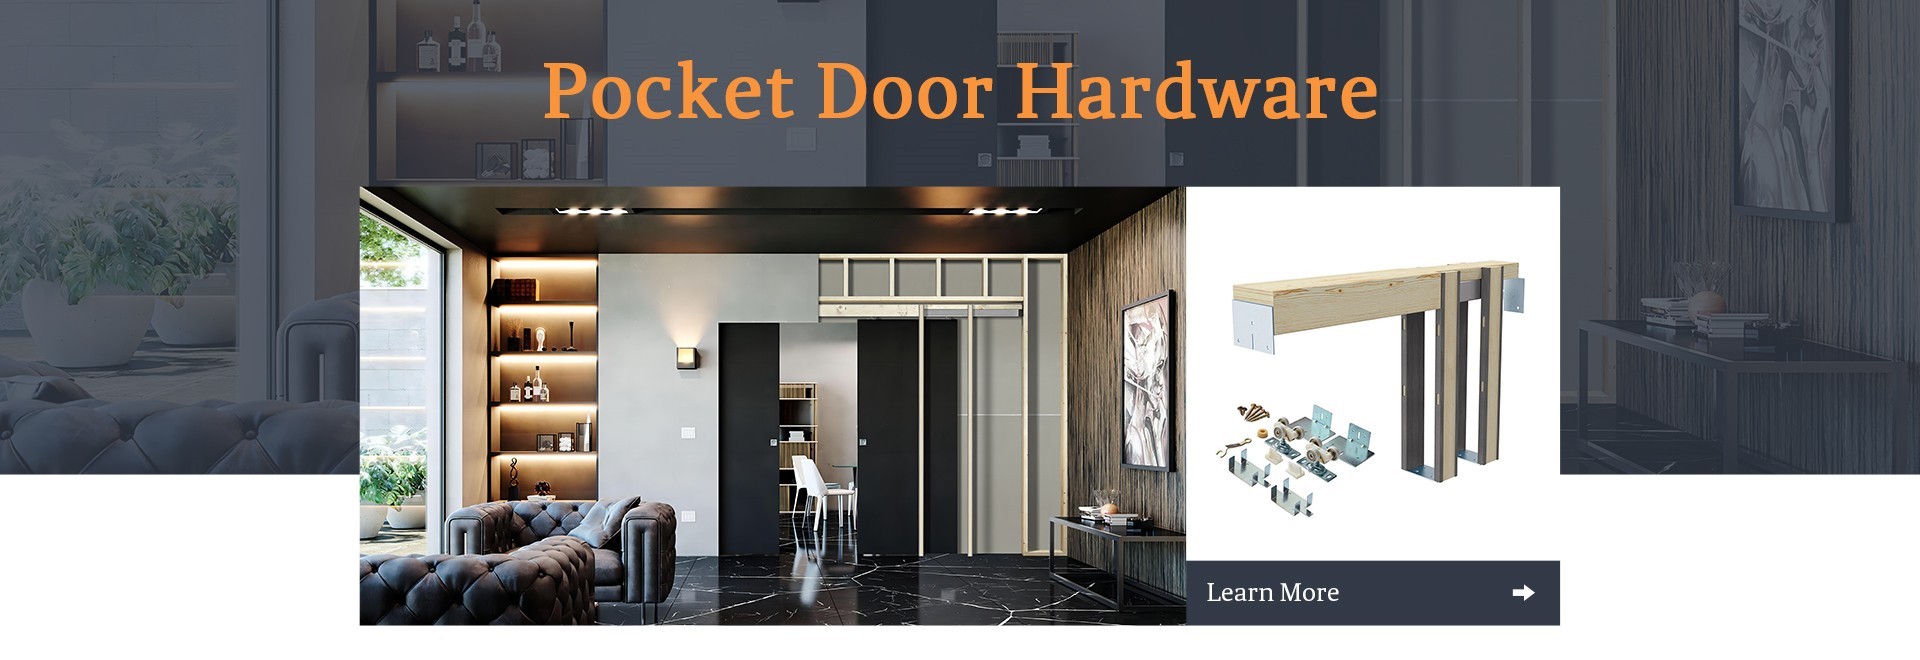 pocket door hardware